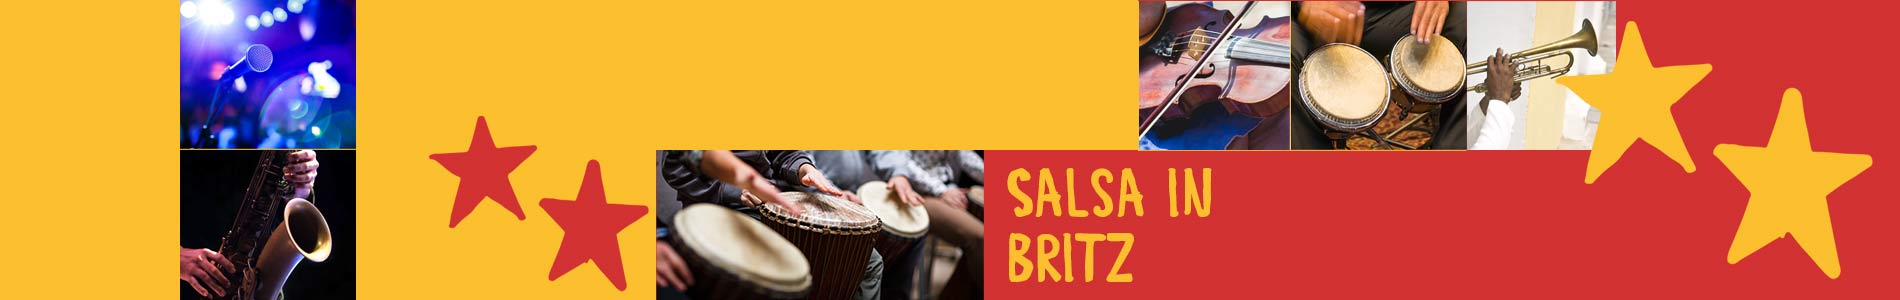 Salsa in Britz – Salsa lernen und tanzen, Tanzkurse, Partys, Veranstaltungen